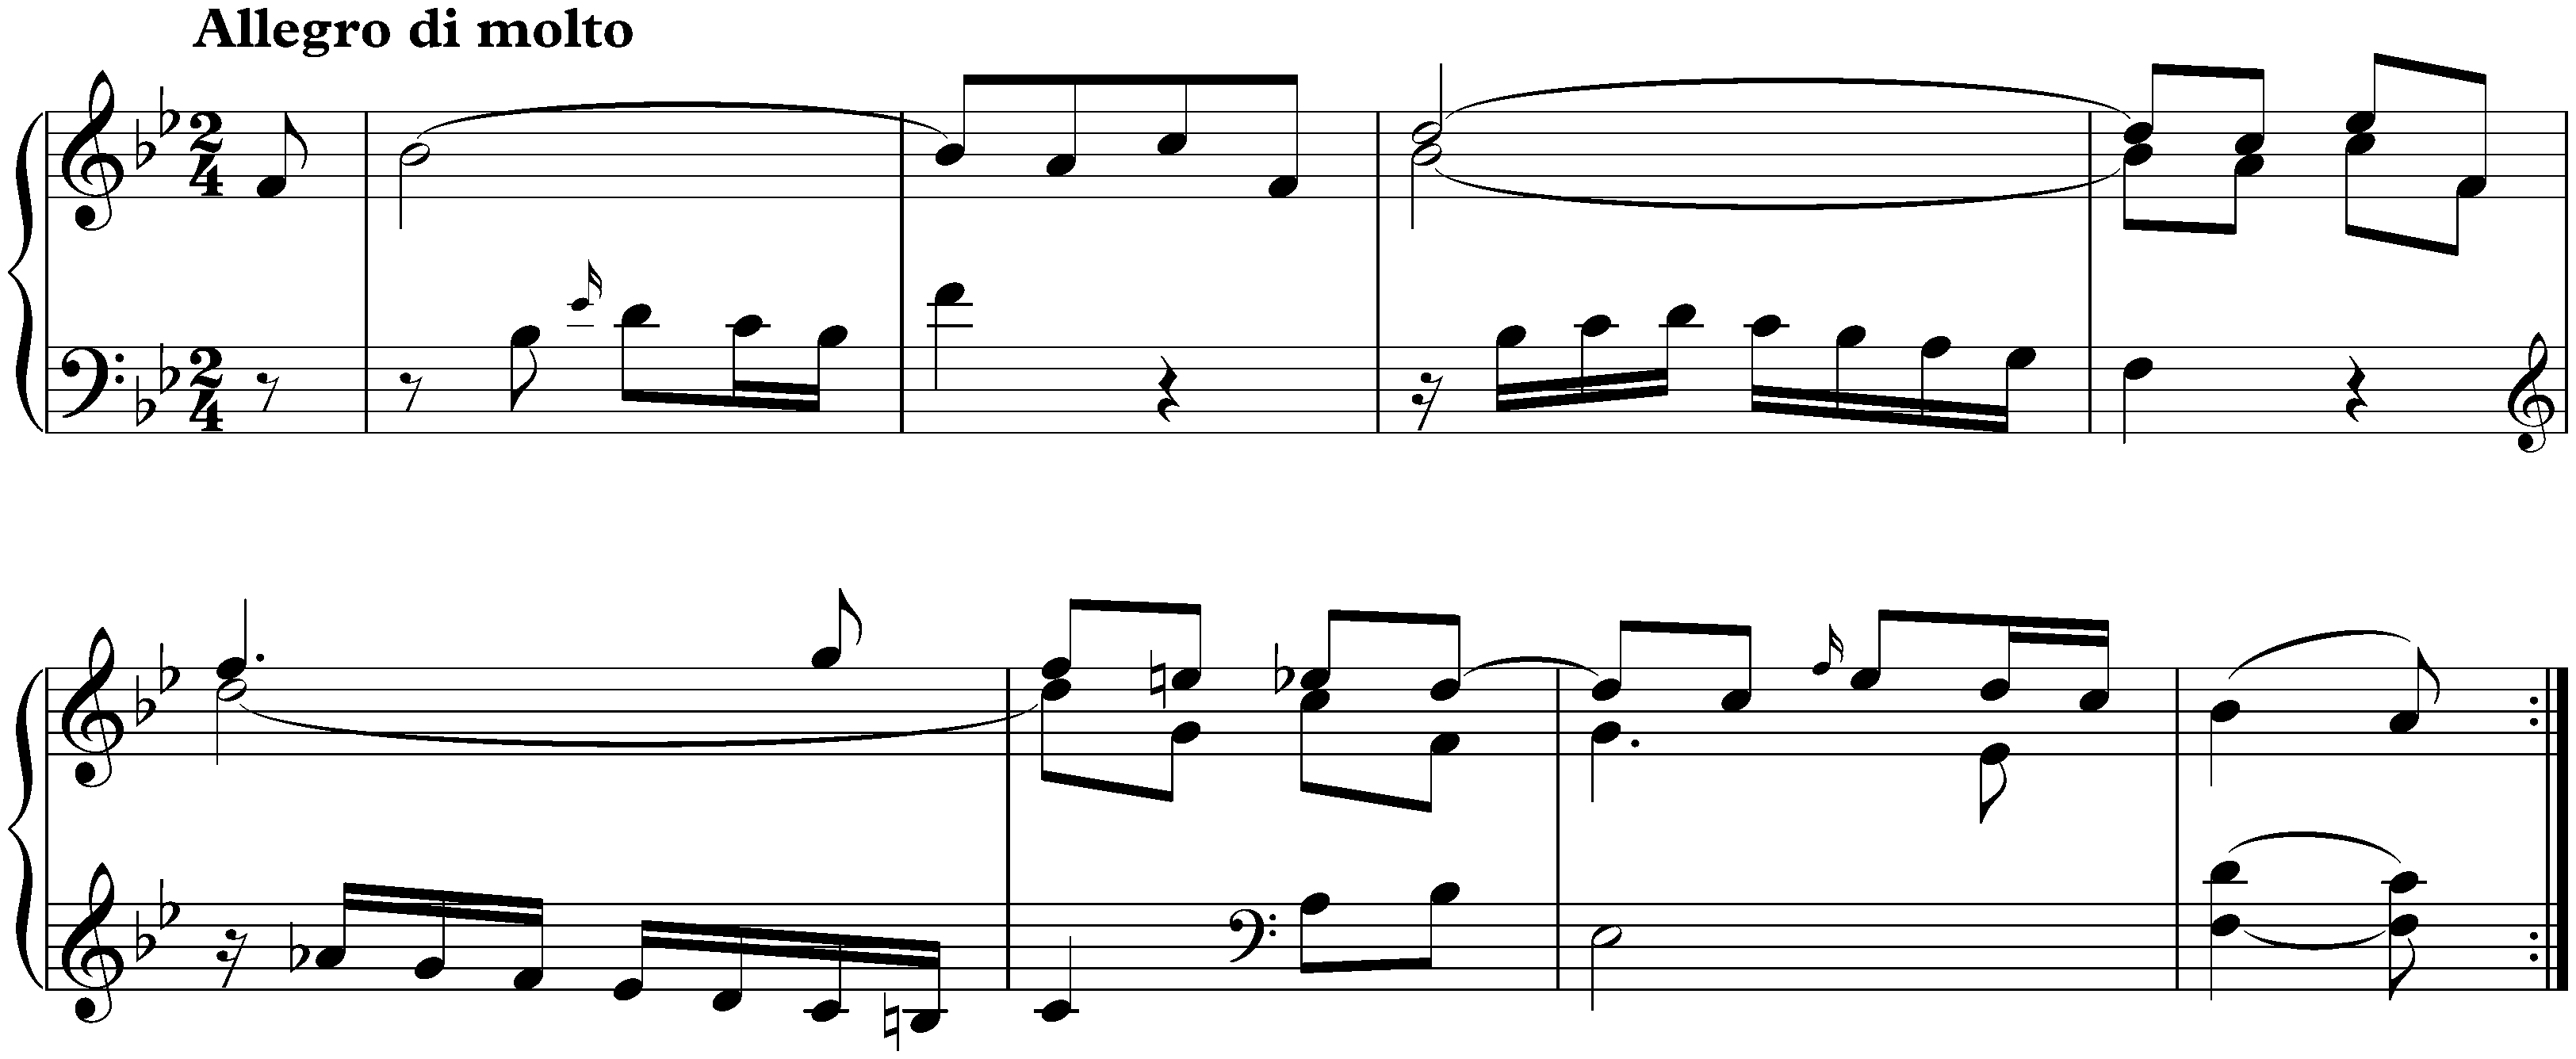 Sonata in B-flat major, Hob. XVI:41; 2. Allegro di molto